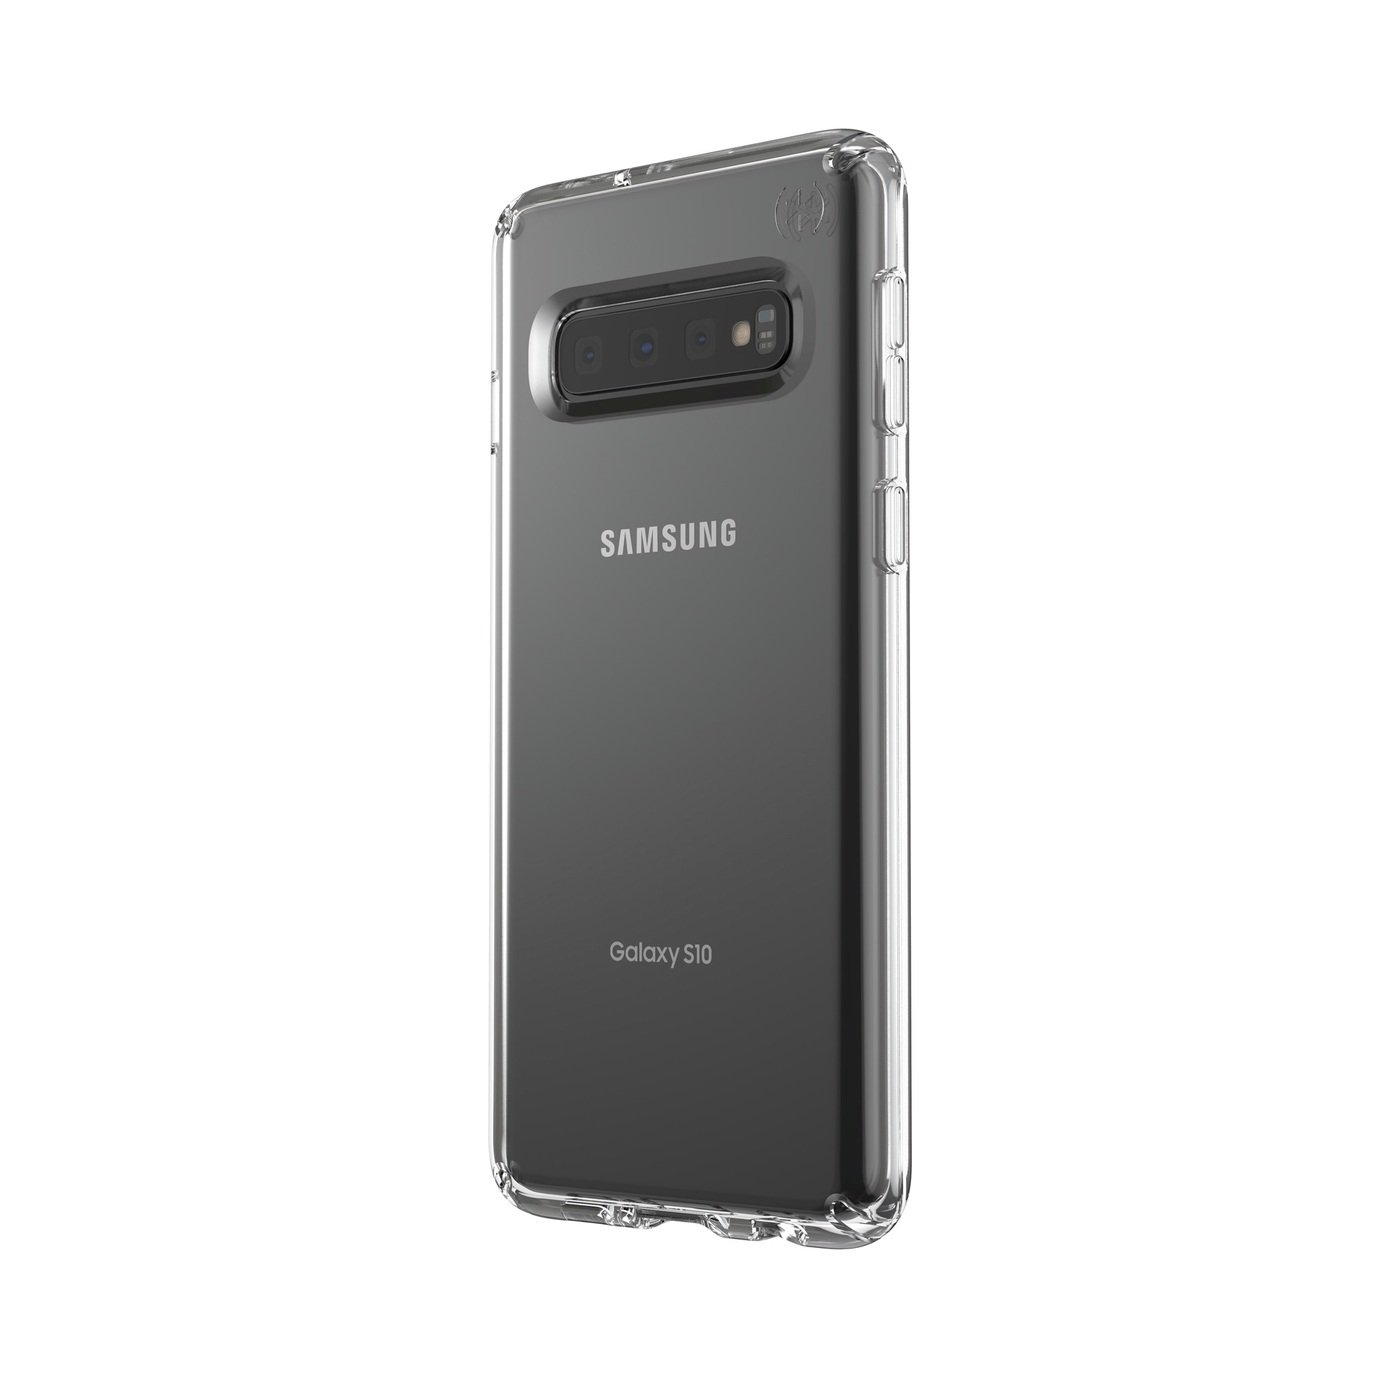 Presidio Samsung Galaxy S10 Mobile Phone Case Review